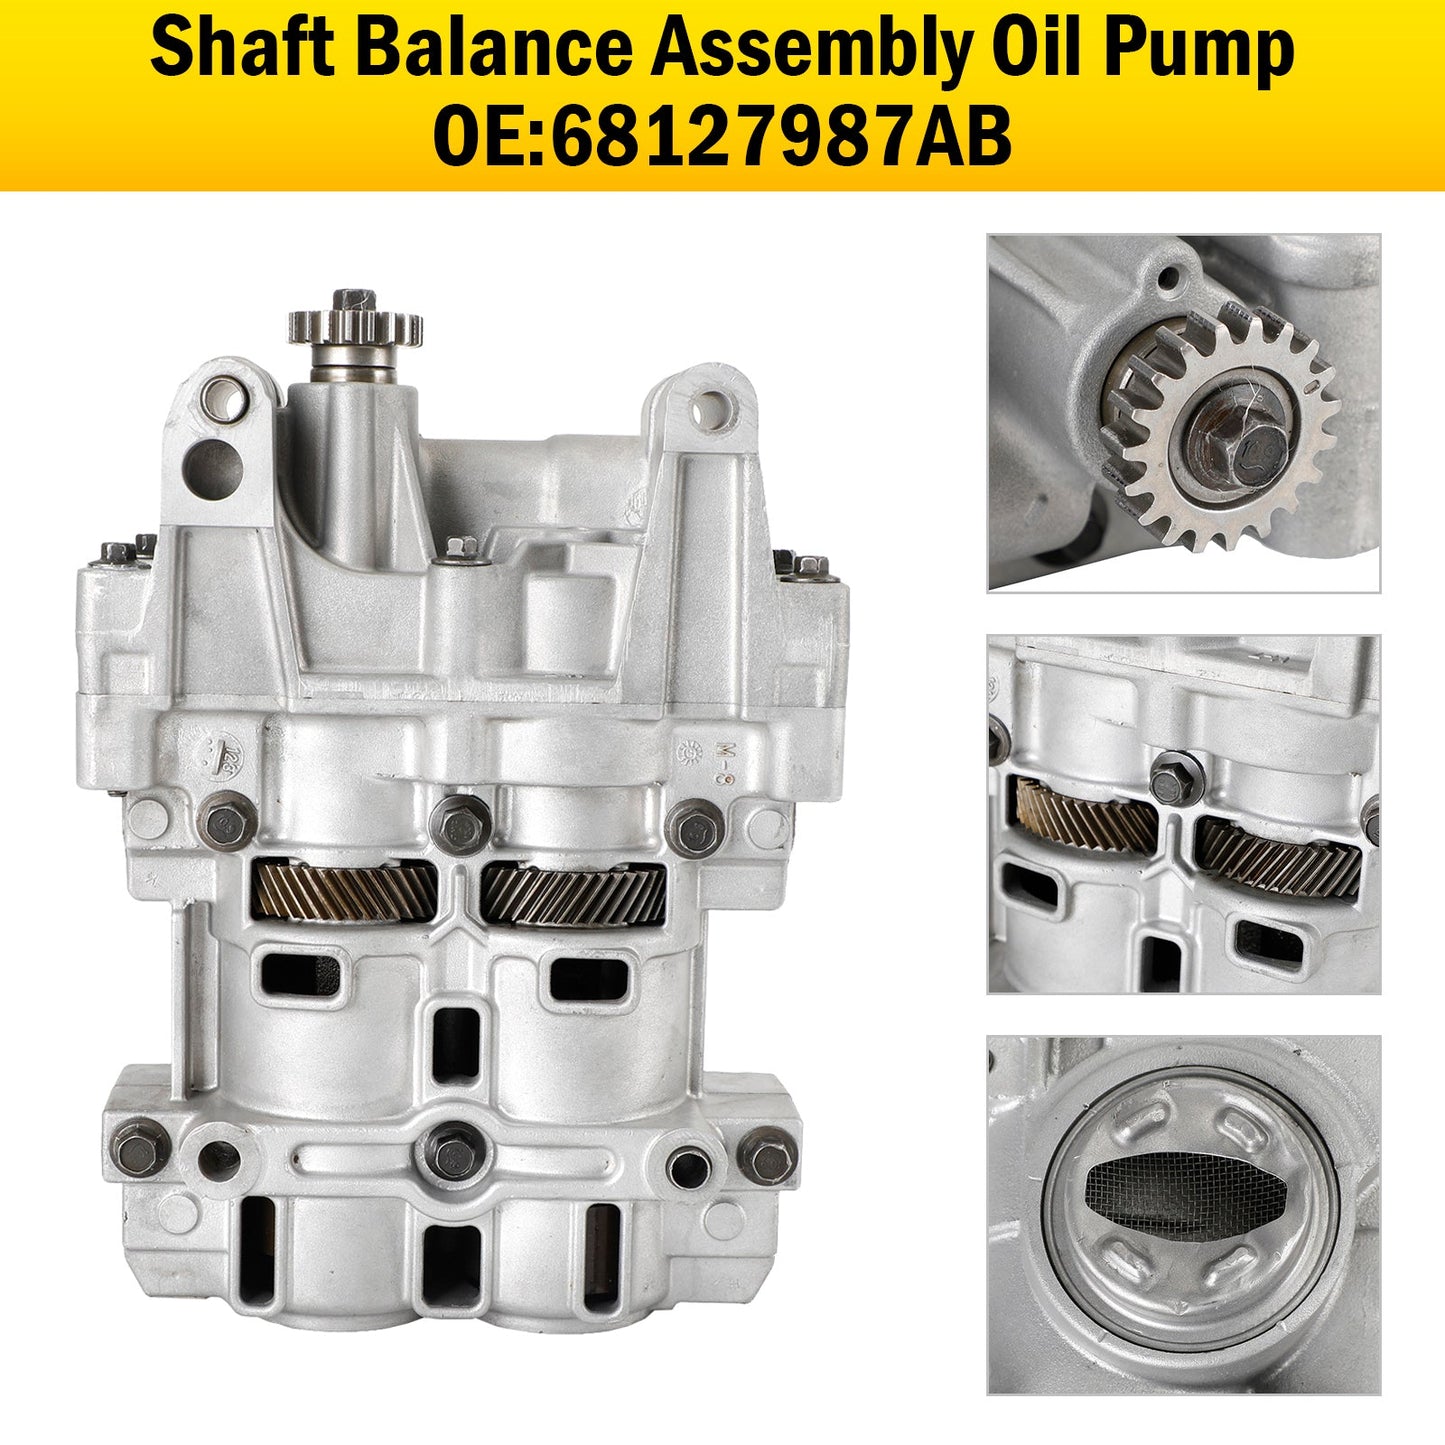 2007-2016 Dodge Avenger Status Chrysler Sebring 2.4L Shaft Balance Assembly Oil Pump 68127987AB